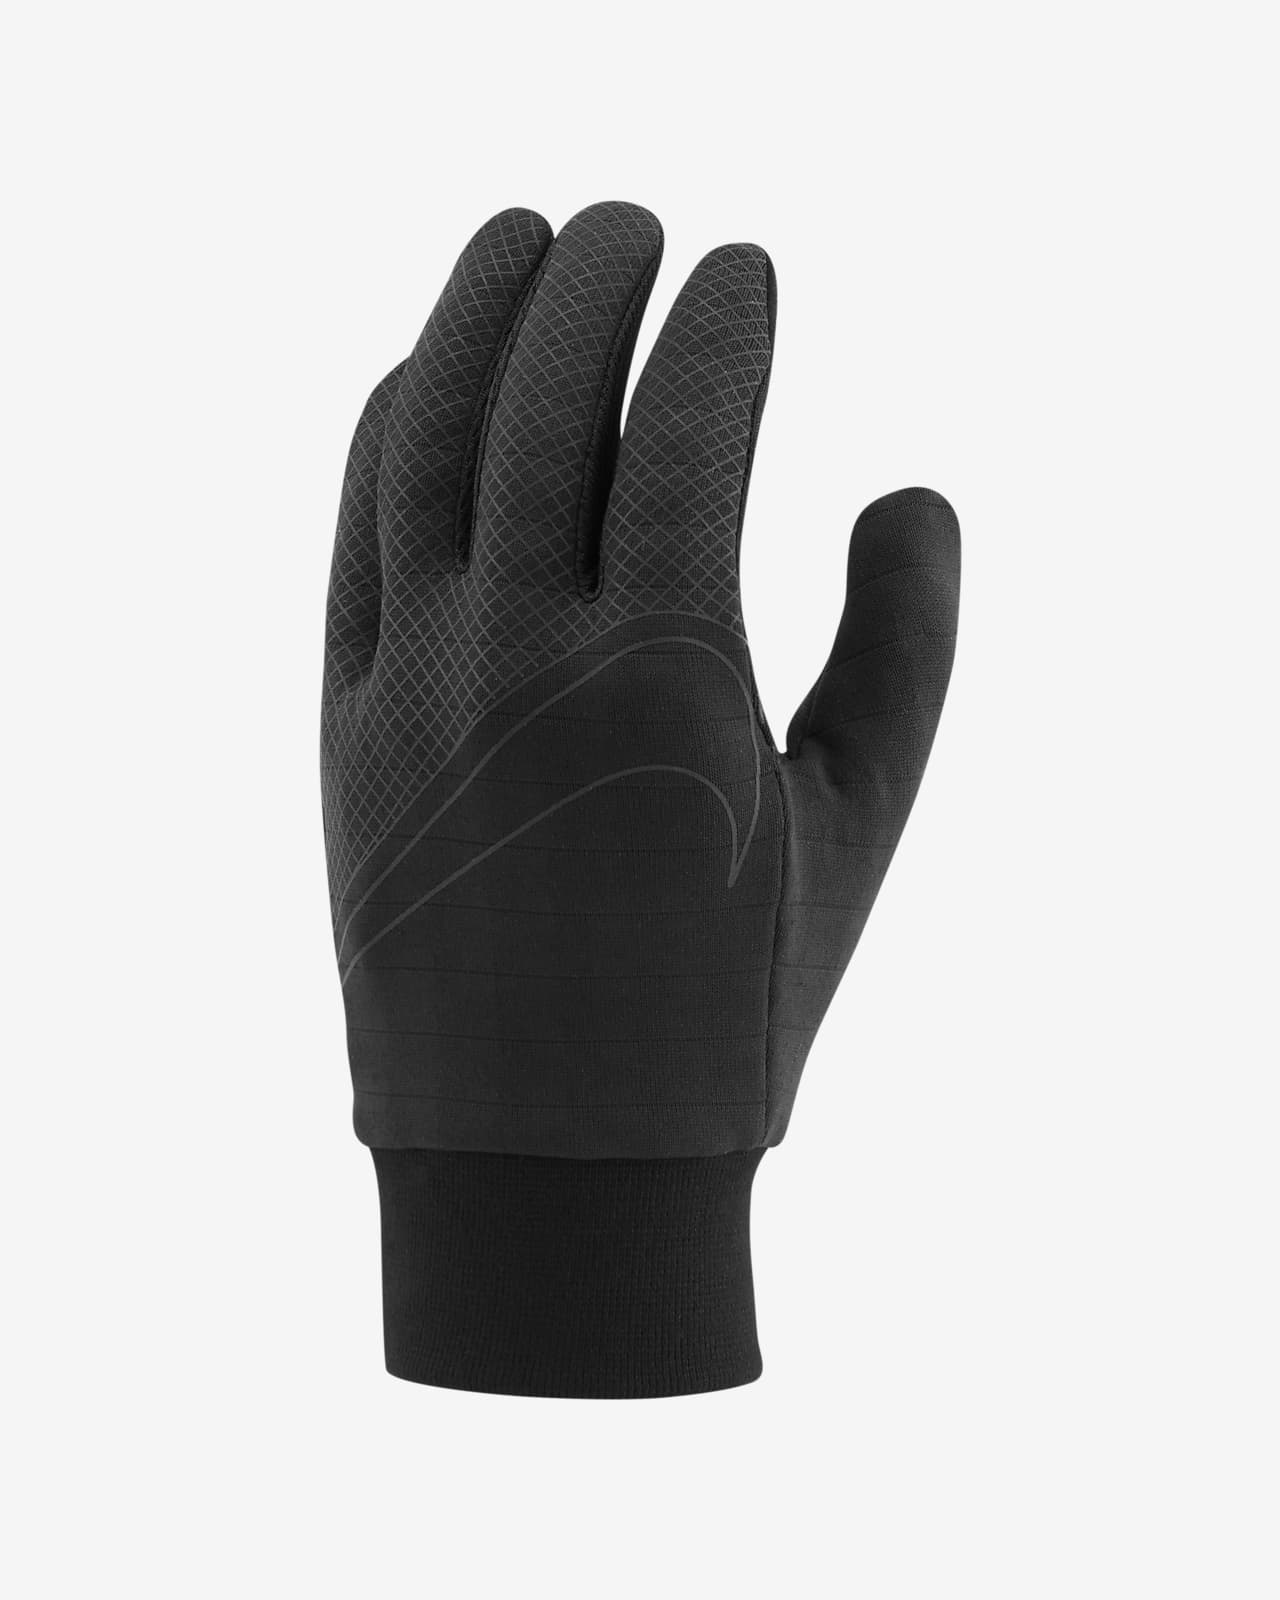 Nike Sphere 360 Men's Running Gloves 